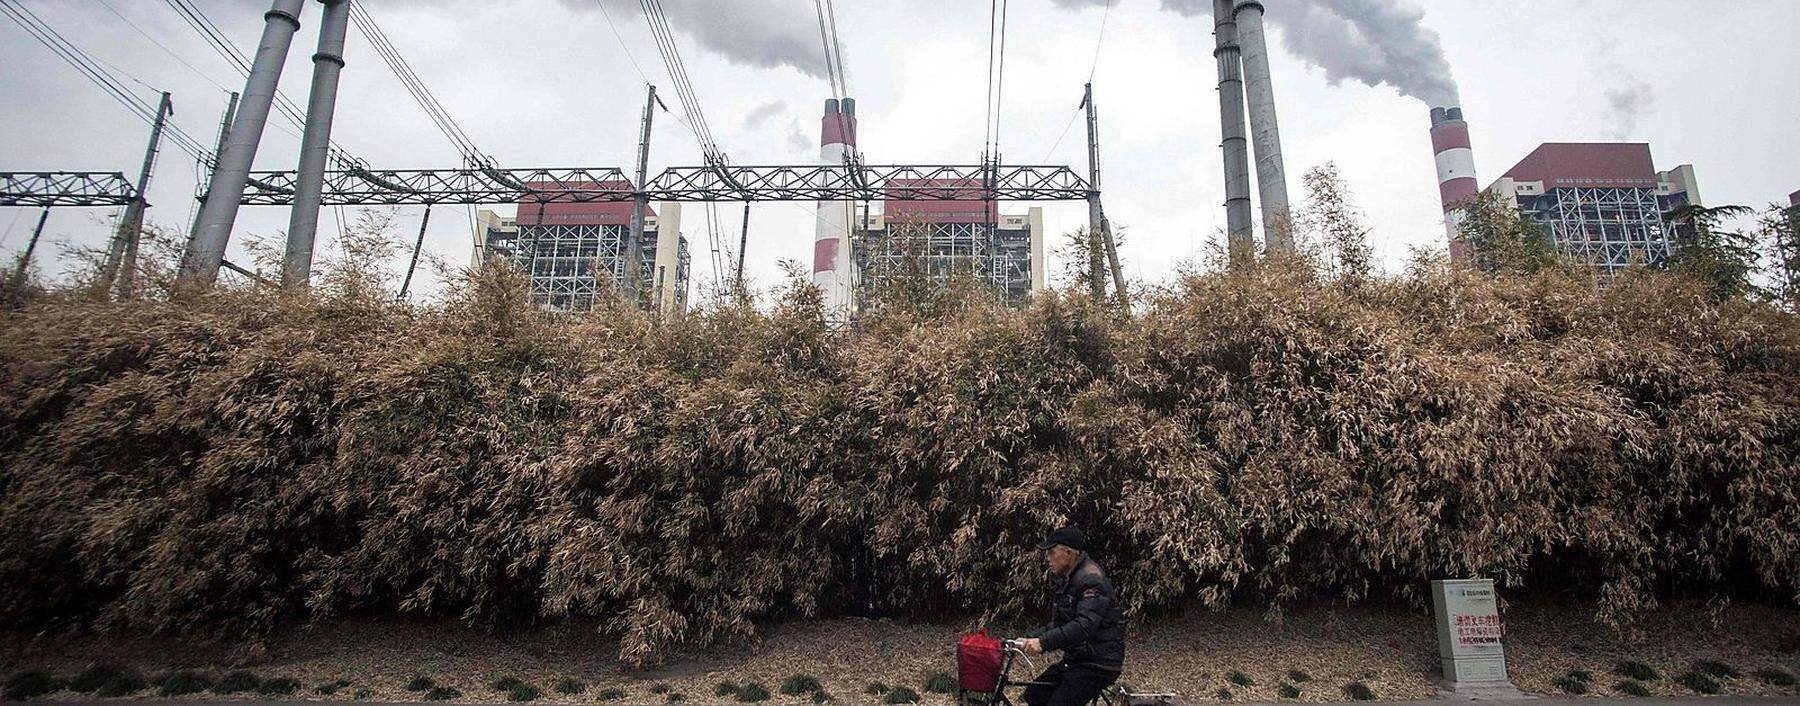 Archivbild eines Kohlekraftwerks in China, wo die Industrie mittlerweile wieder auf Hochtouren läuft.